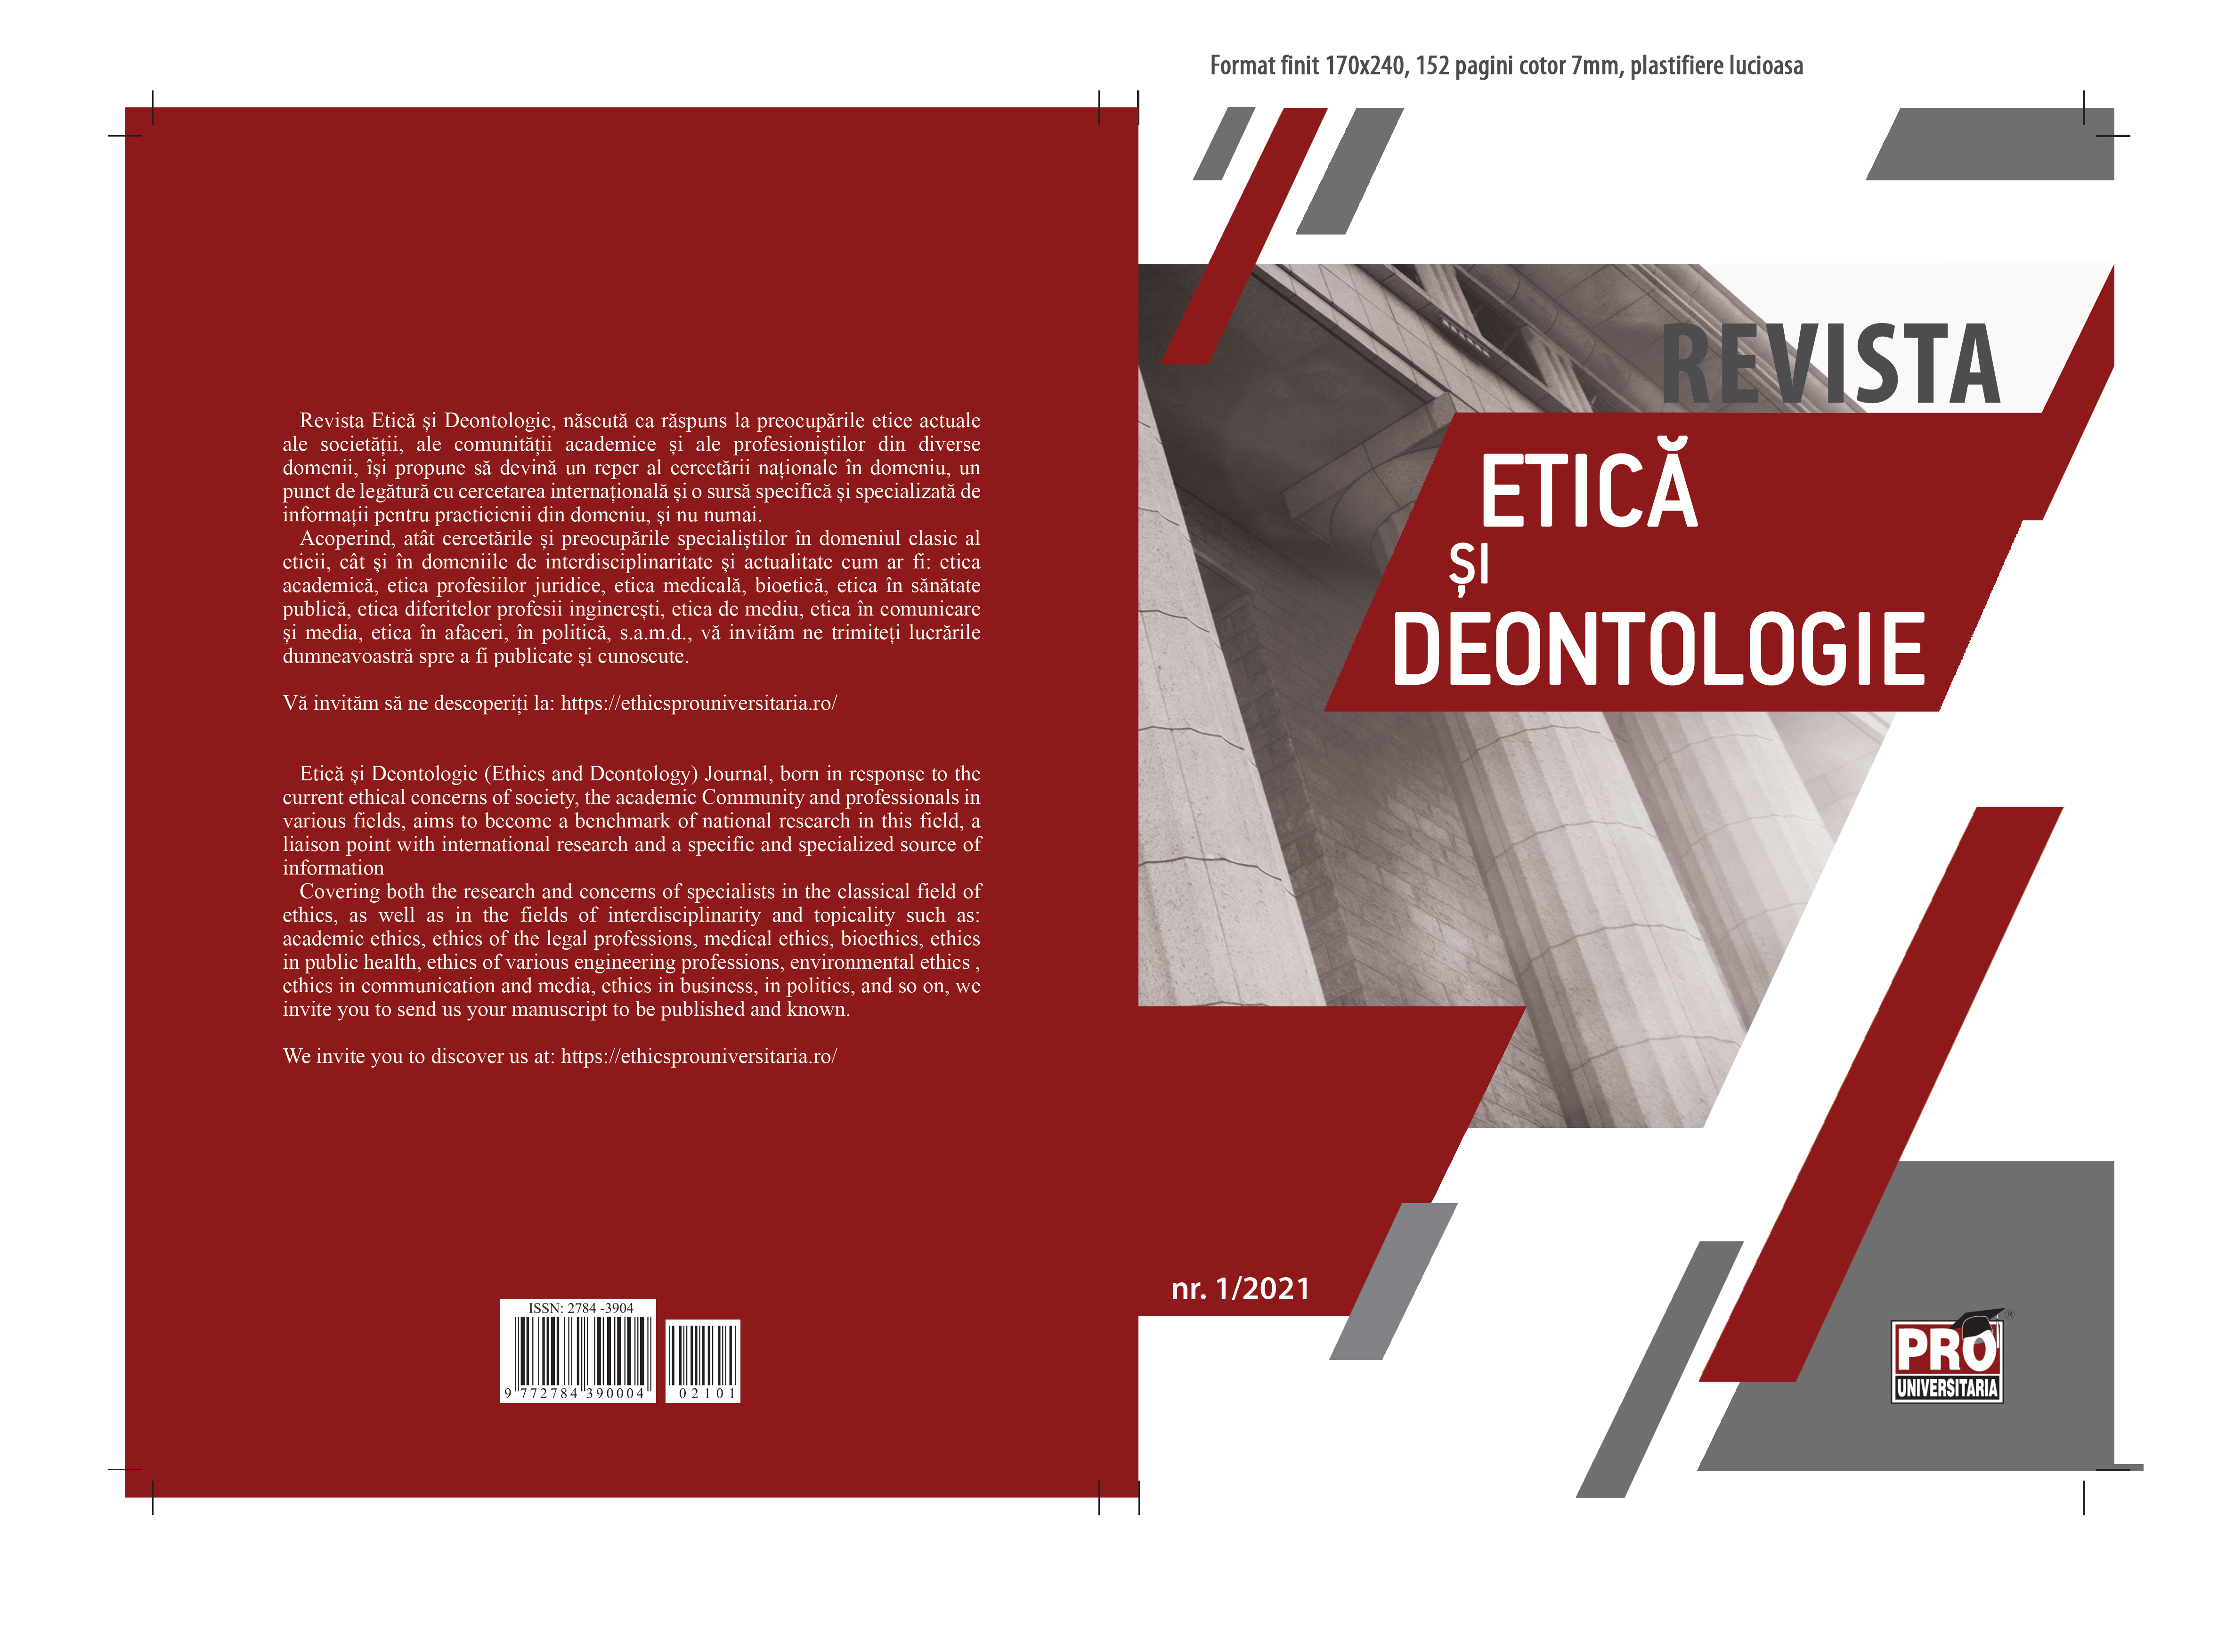 Dileme și provocări în sprijinirea cursurilor de etică, deontologie și integritate academică